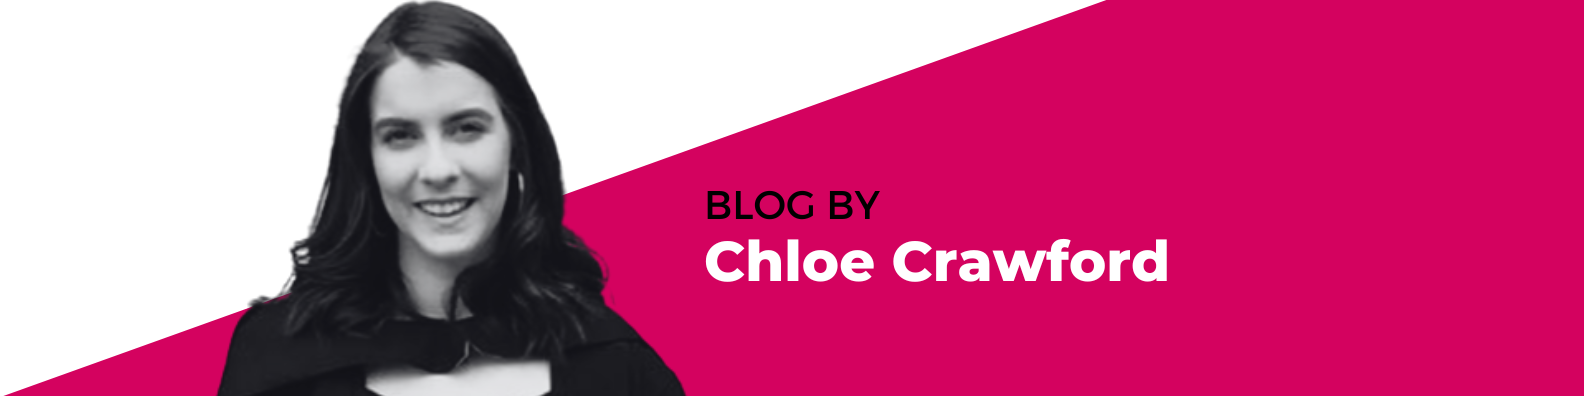 Author Chloe Crawford Employment